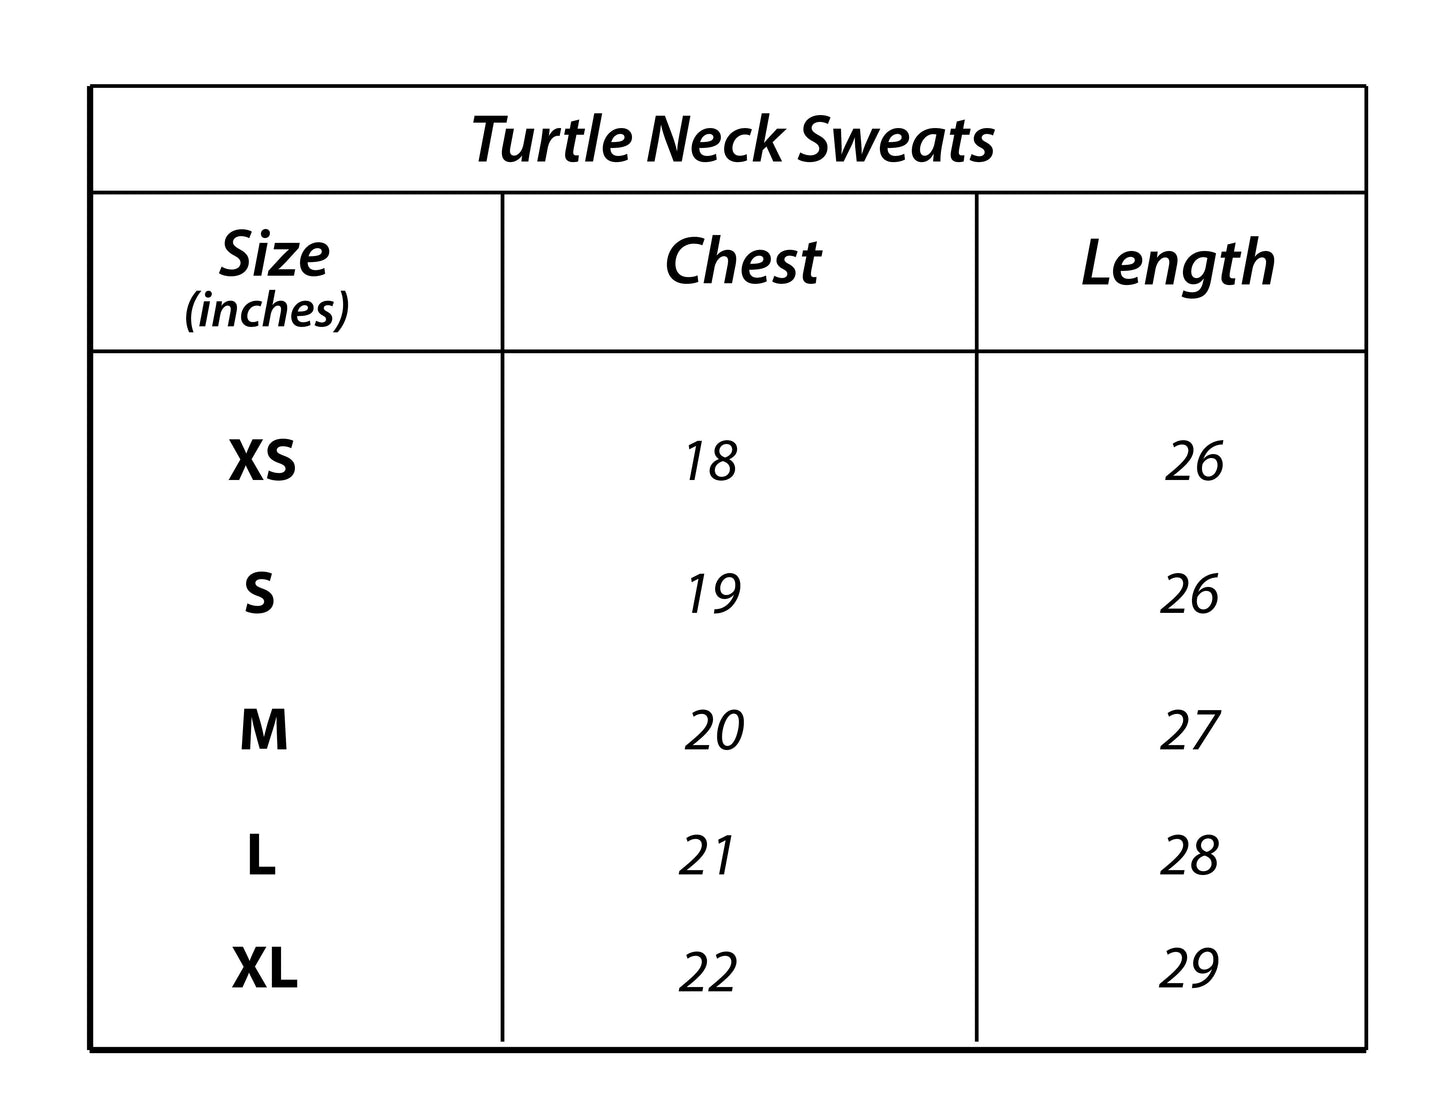 Z.A.R.A Premium Turtle Neck Sweats (Camel)